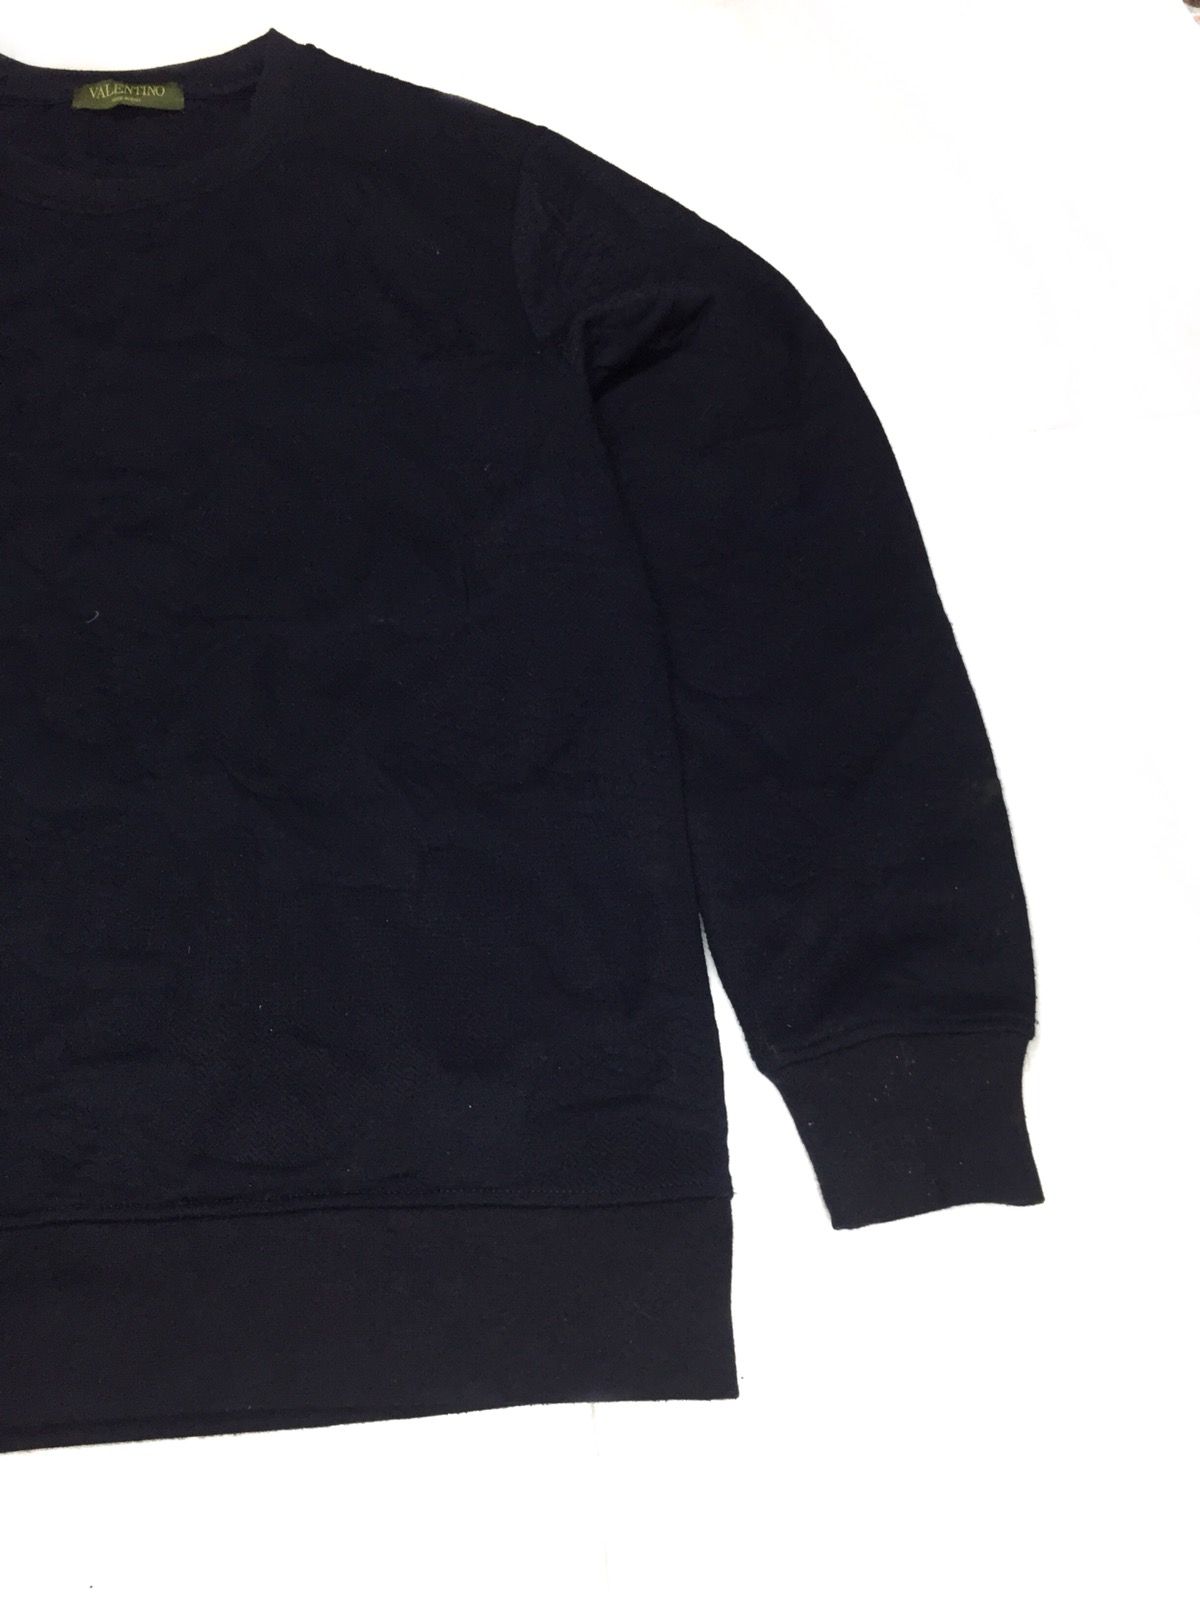 Valentino Sweatshirt Dark Blue - 6